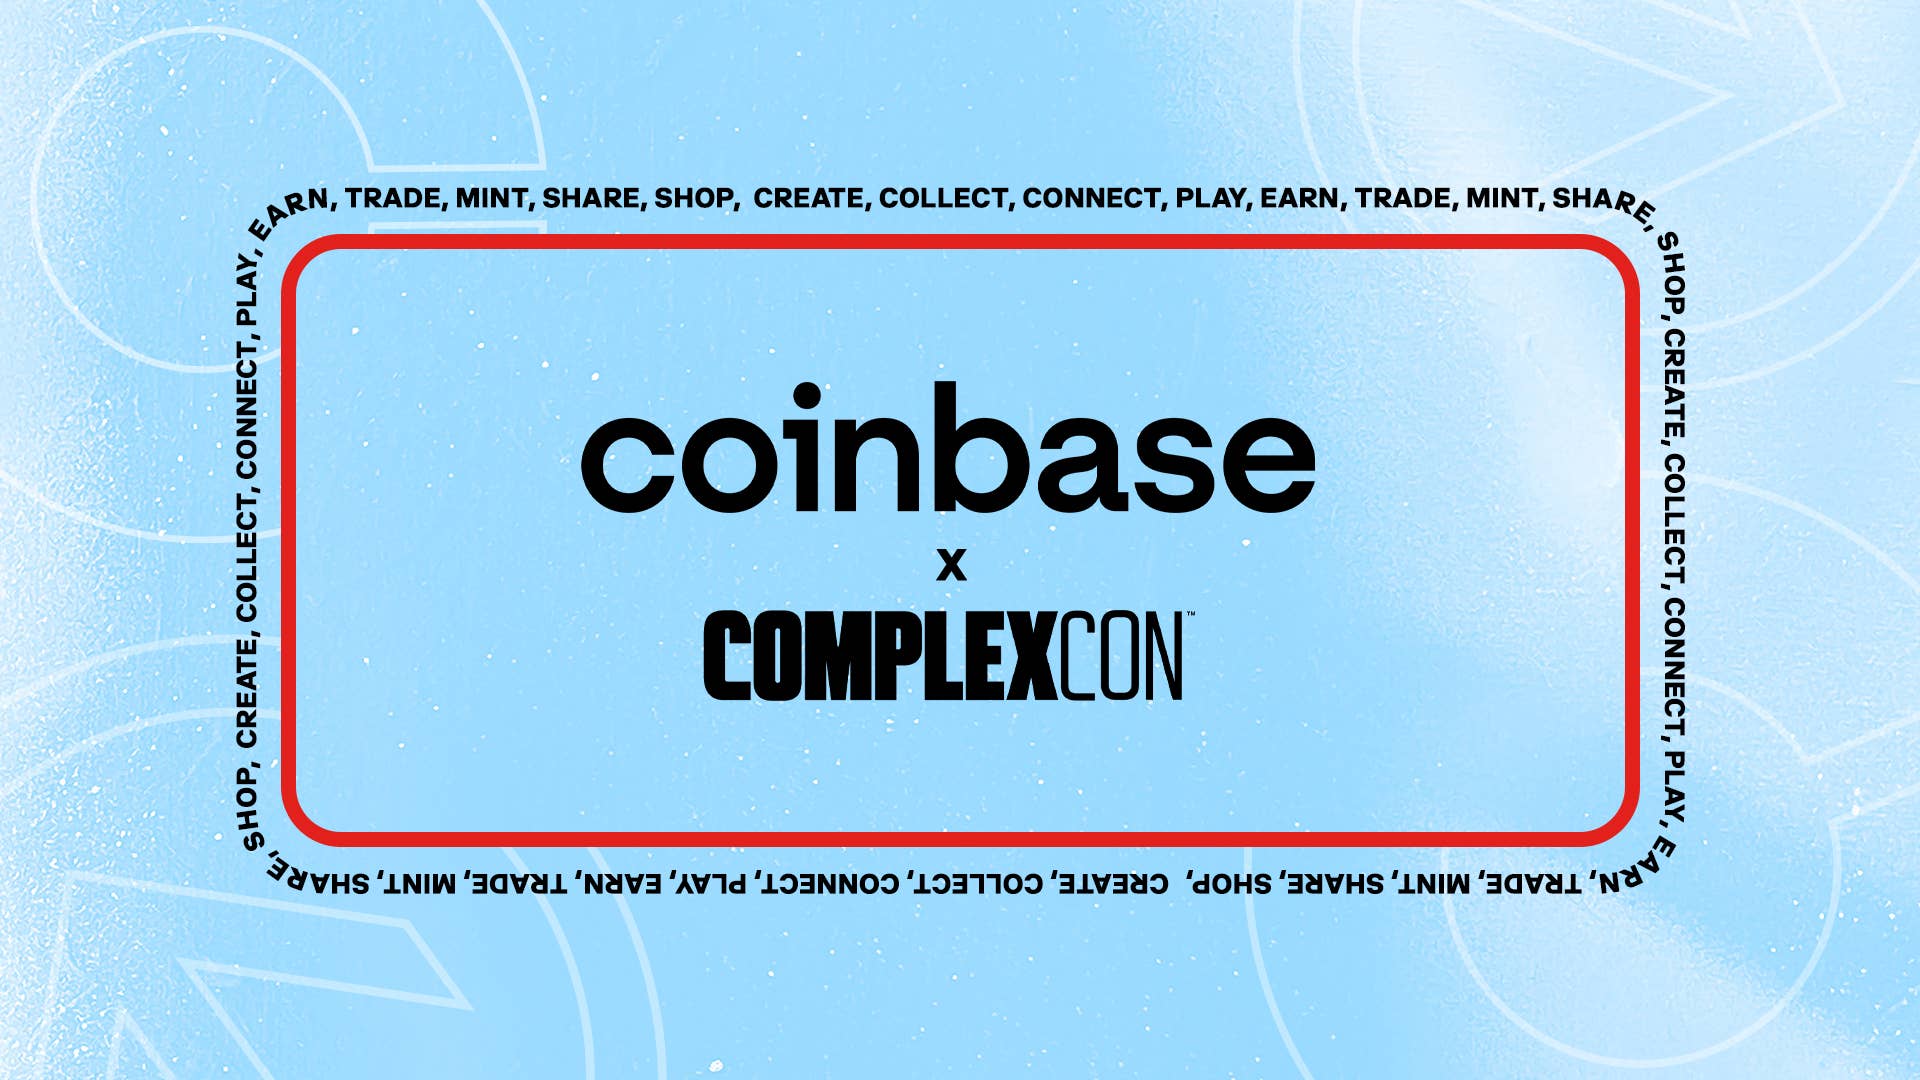 Coinbase x ComplexCon Future Market